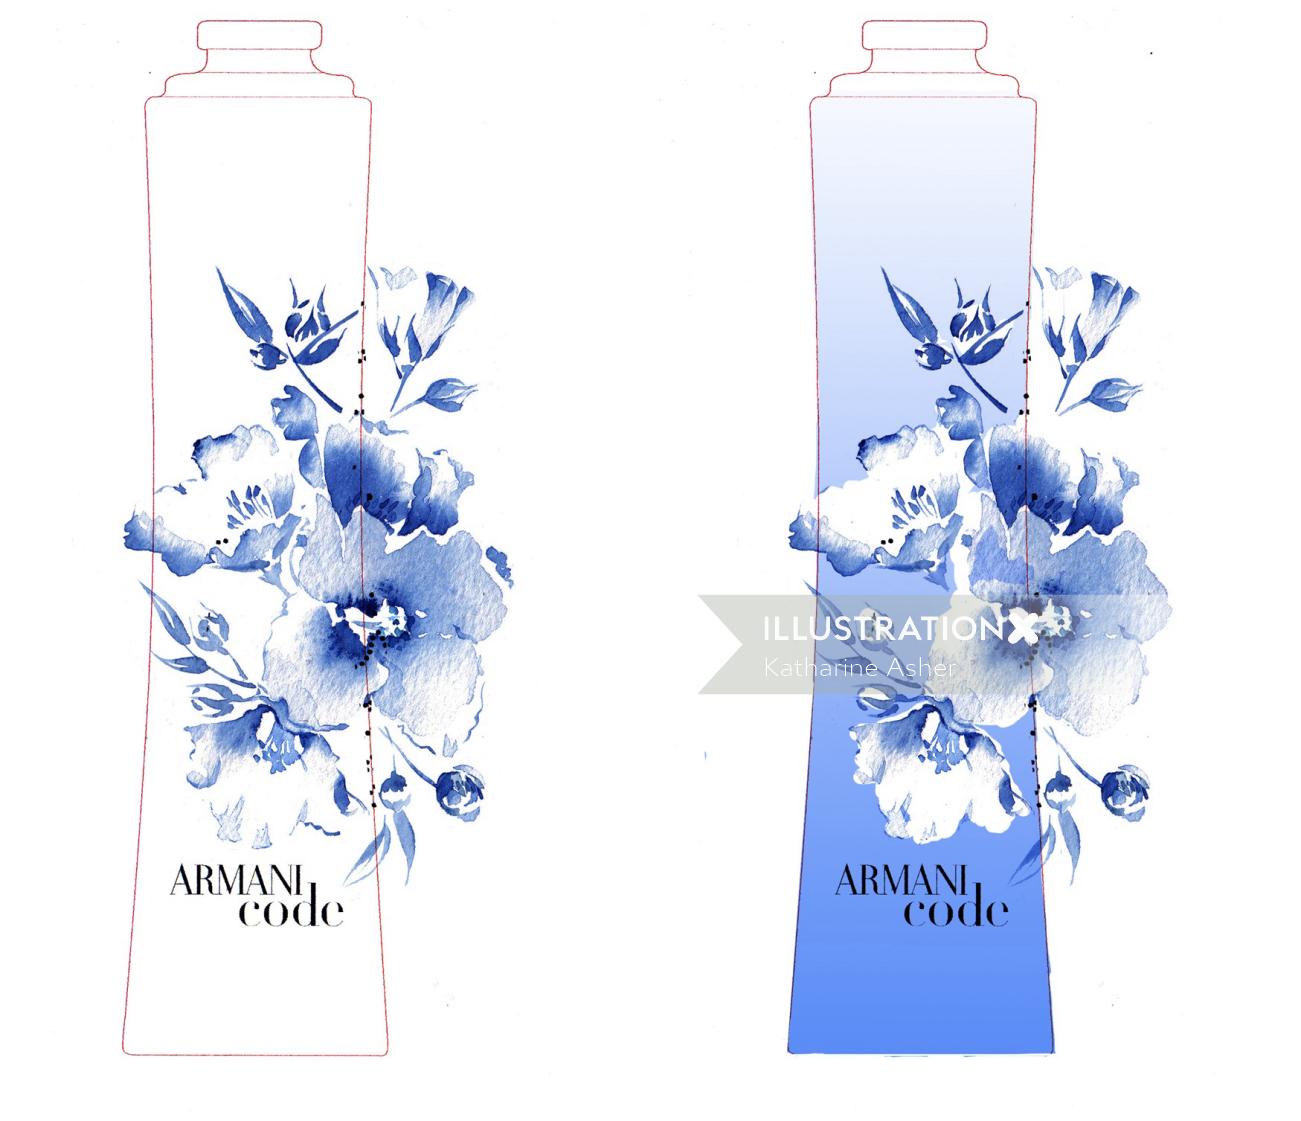 凯瑟琳·阿舍（Katharine Asher）的Armani香水插图